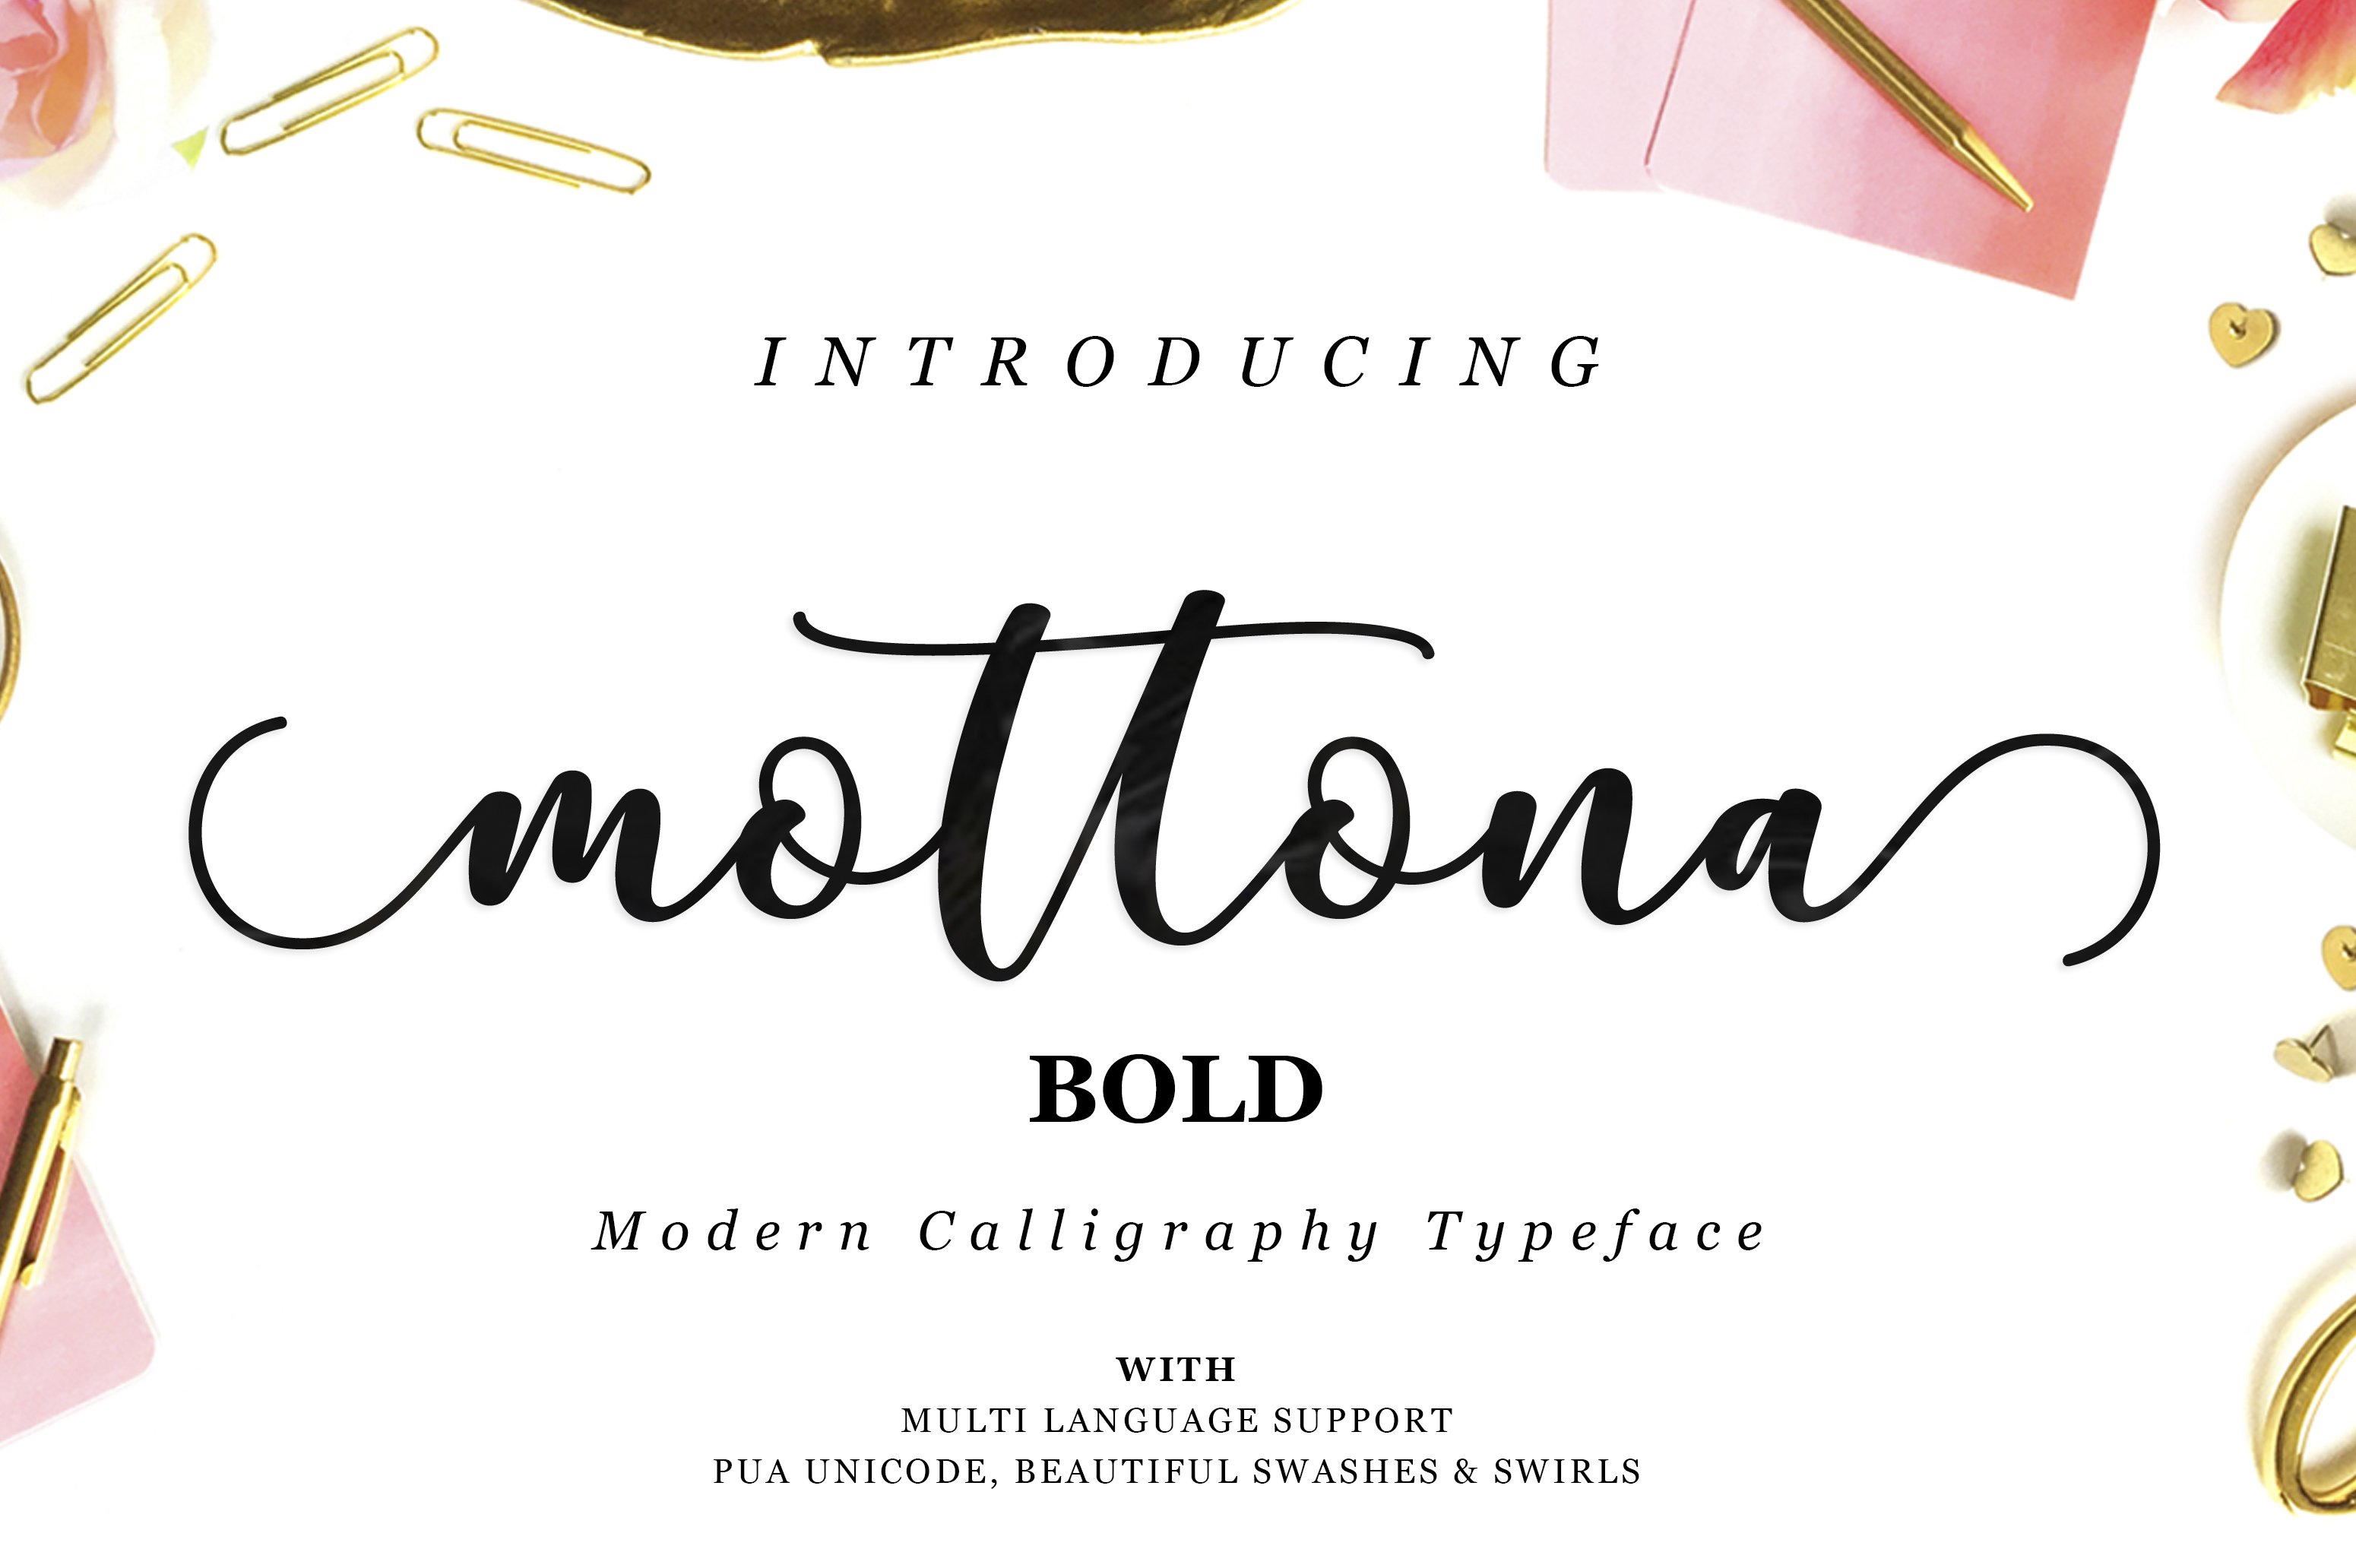 Mottona Bold Script cover image.